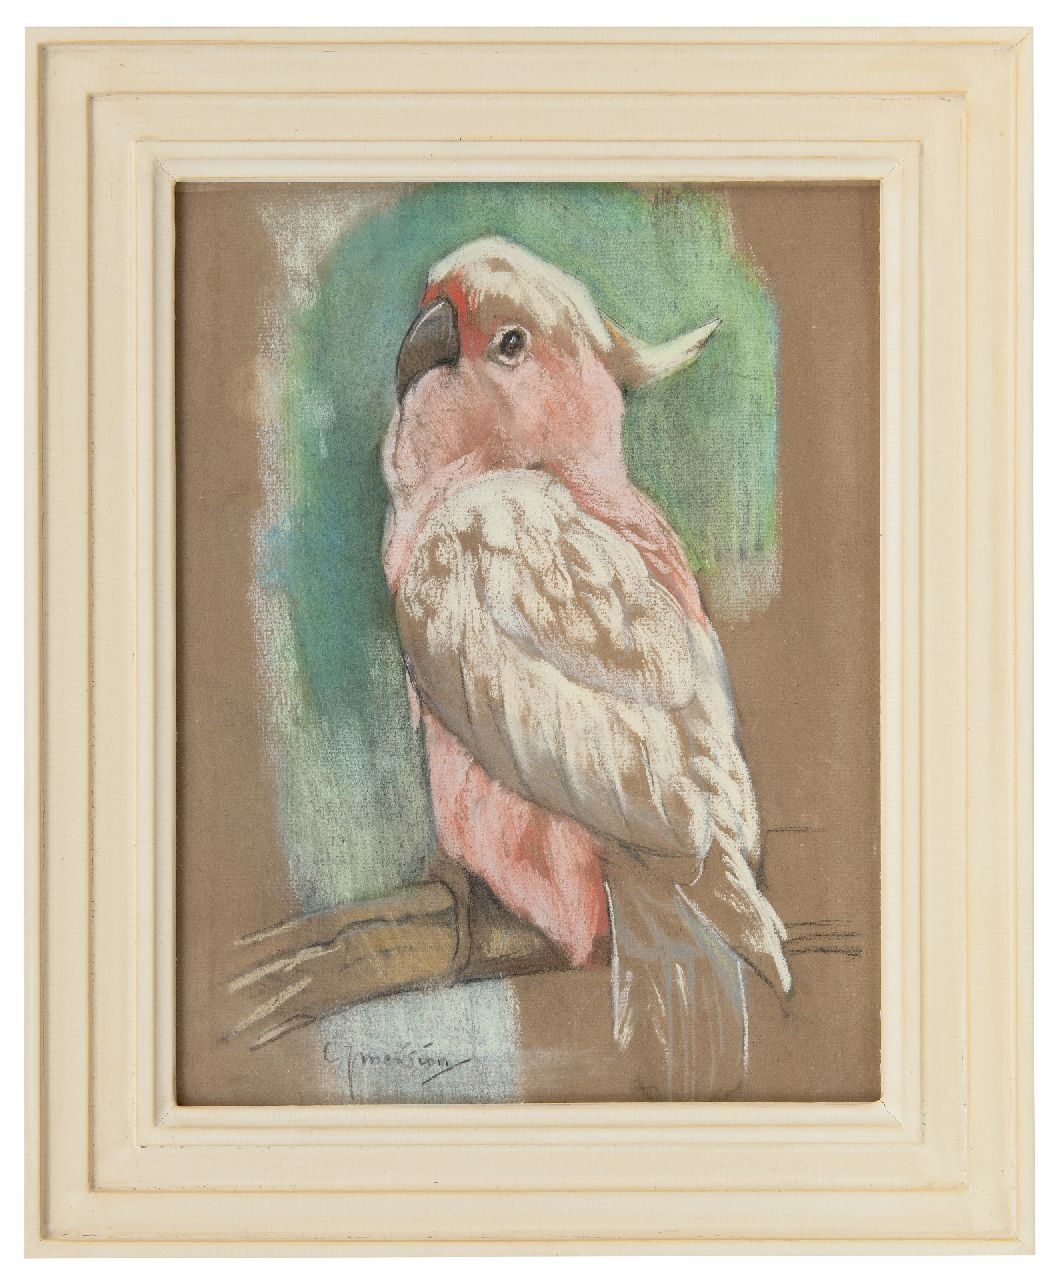 Mension C.J.  | Cornelis Jan Mension | Aquarellen en tekeningen te koop aangeboden | Roze kaketoe, pastel op papier 31,1 x 23,7 cm, gesigneerd linksonder